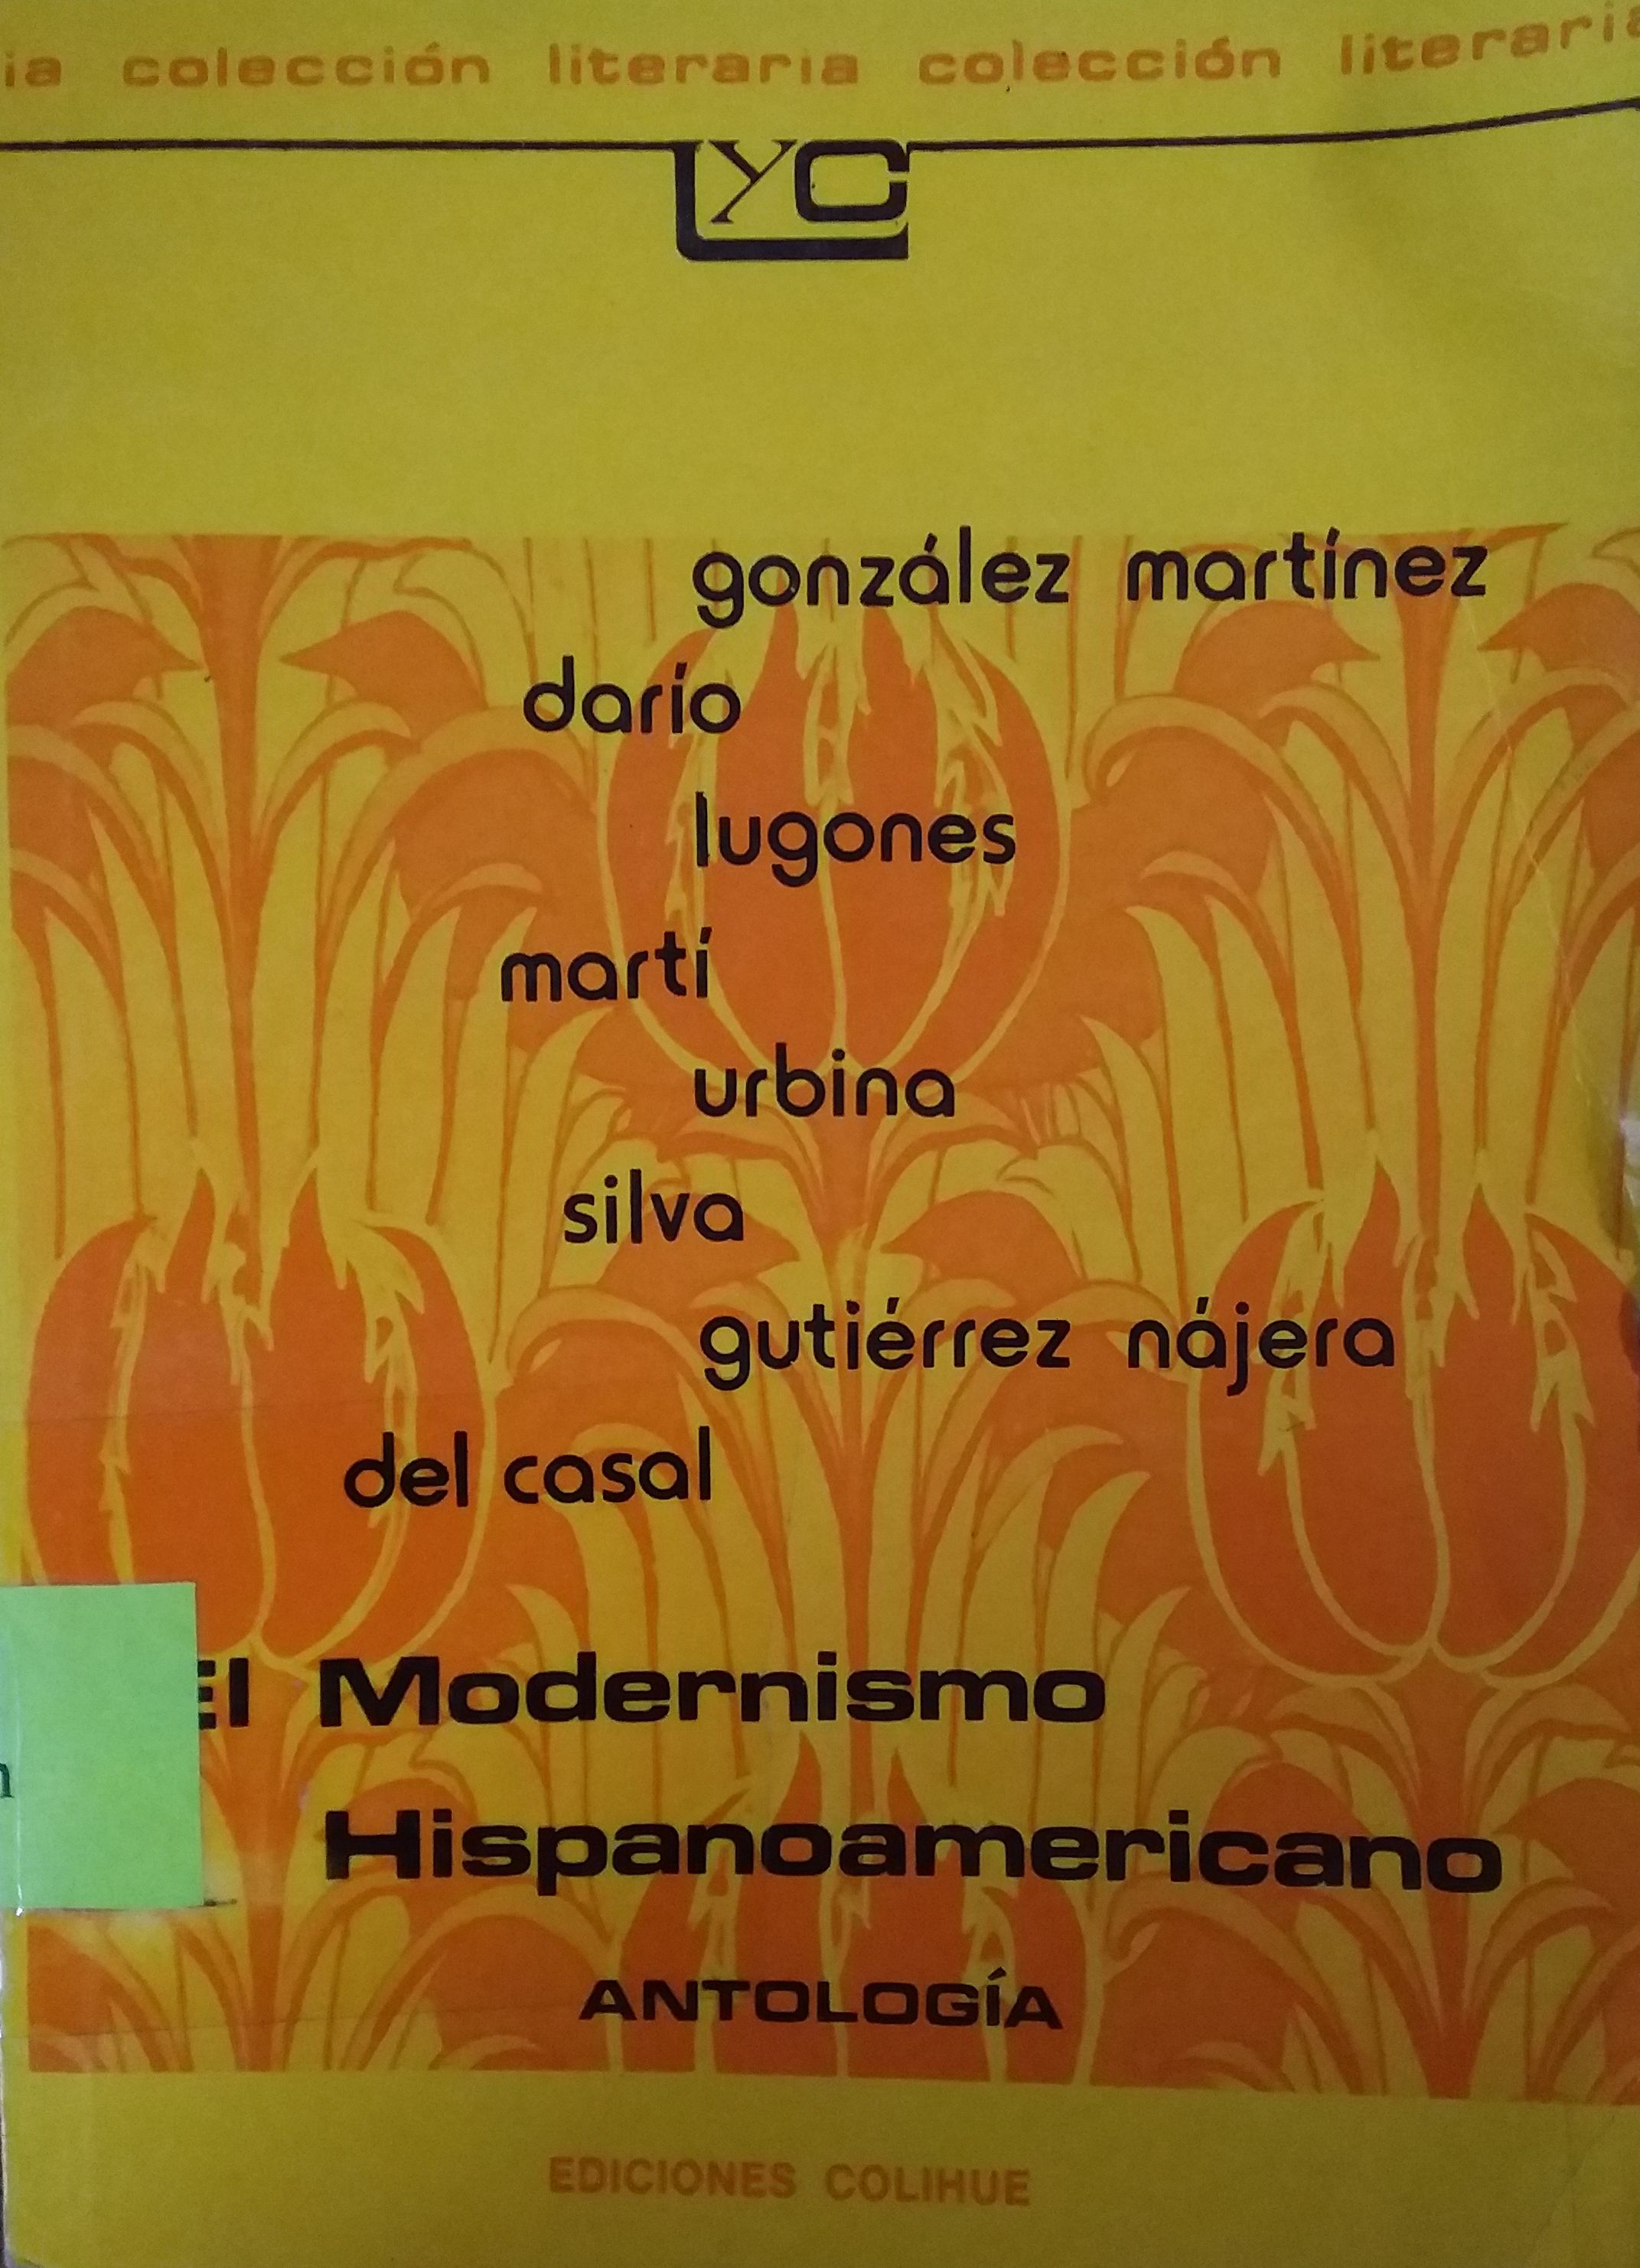 El modernismo Hispanoamericano